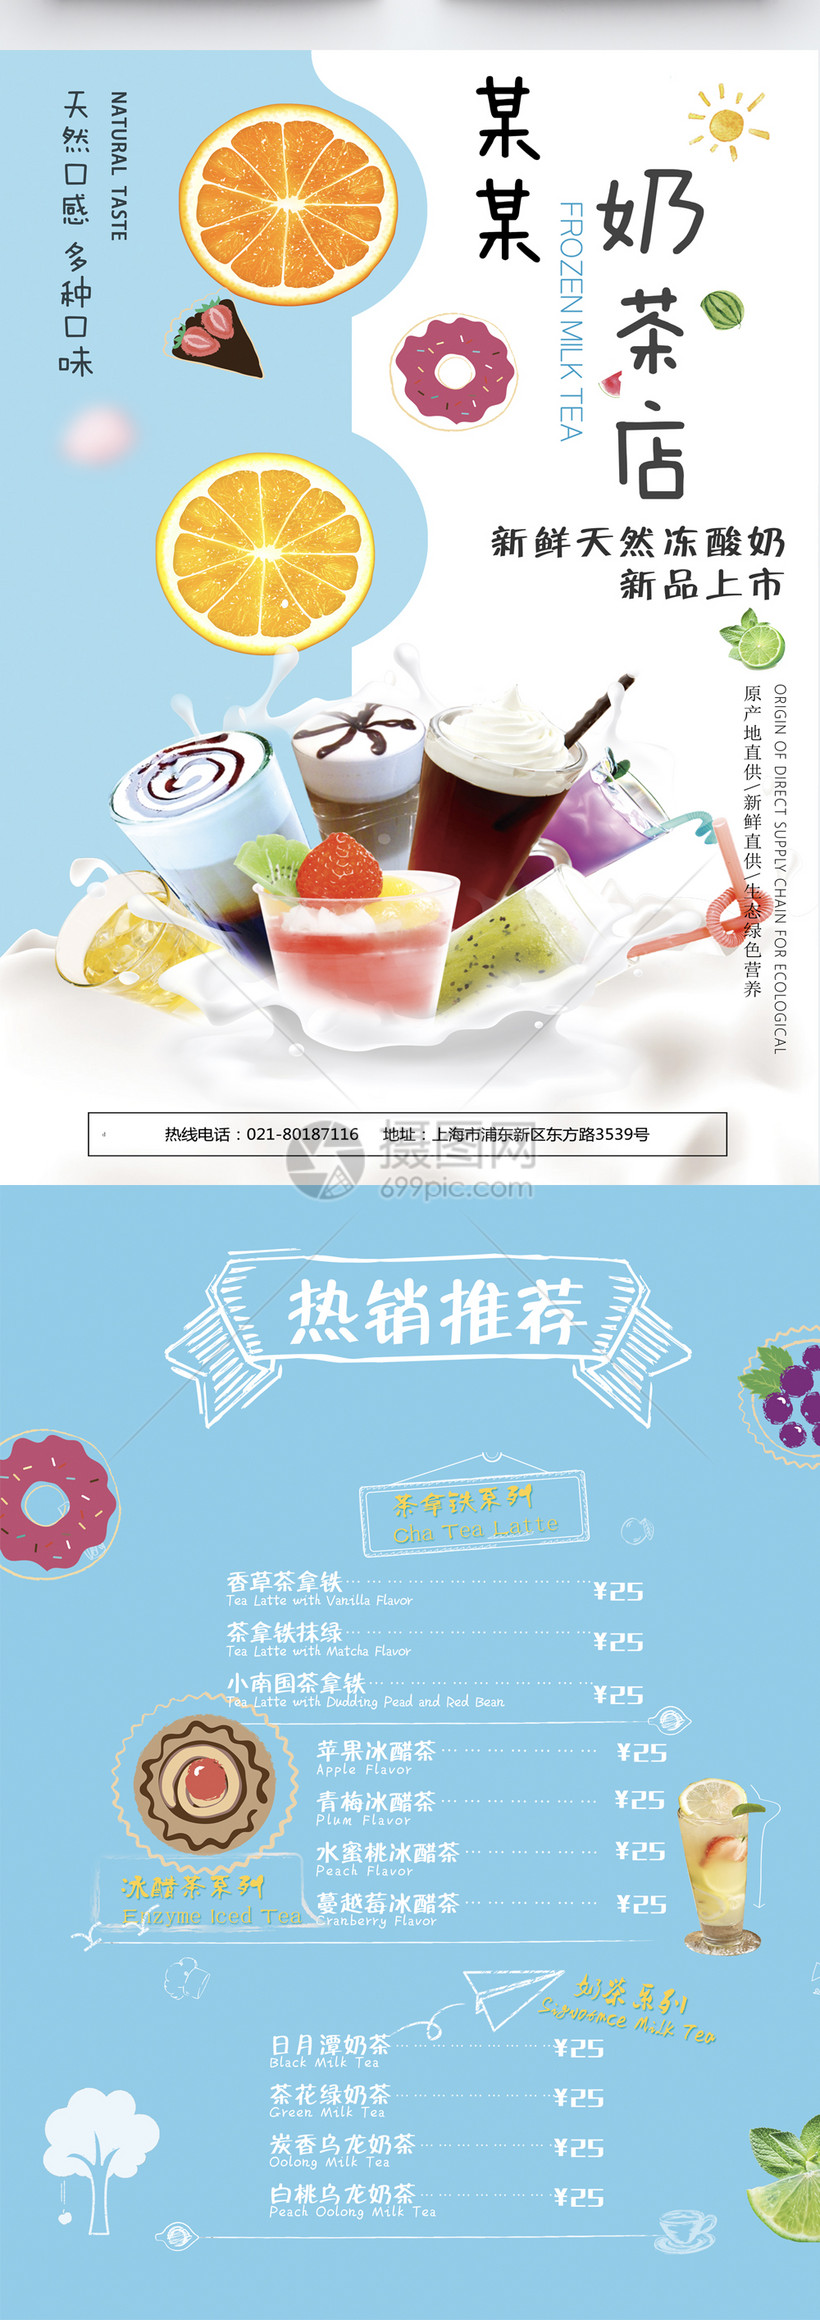 奶茶店宣传单设计图片